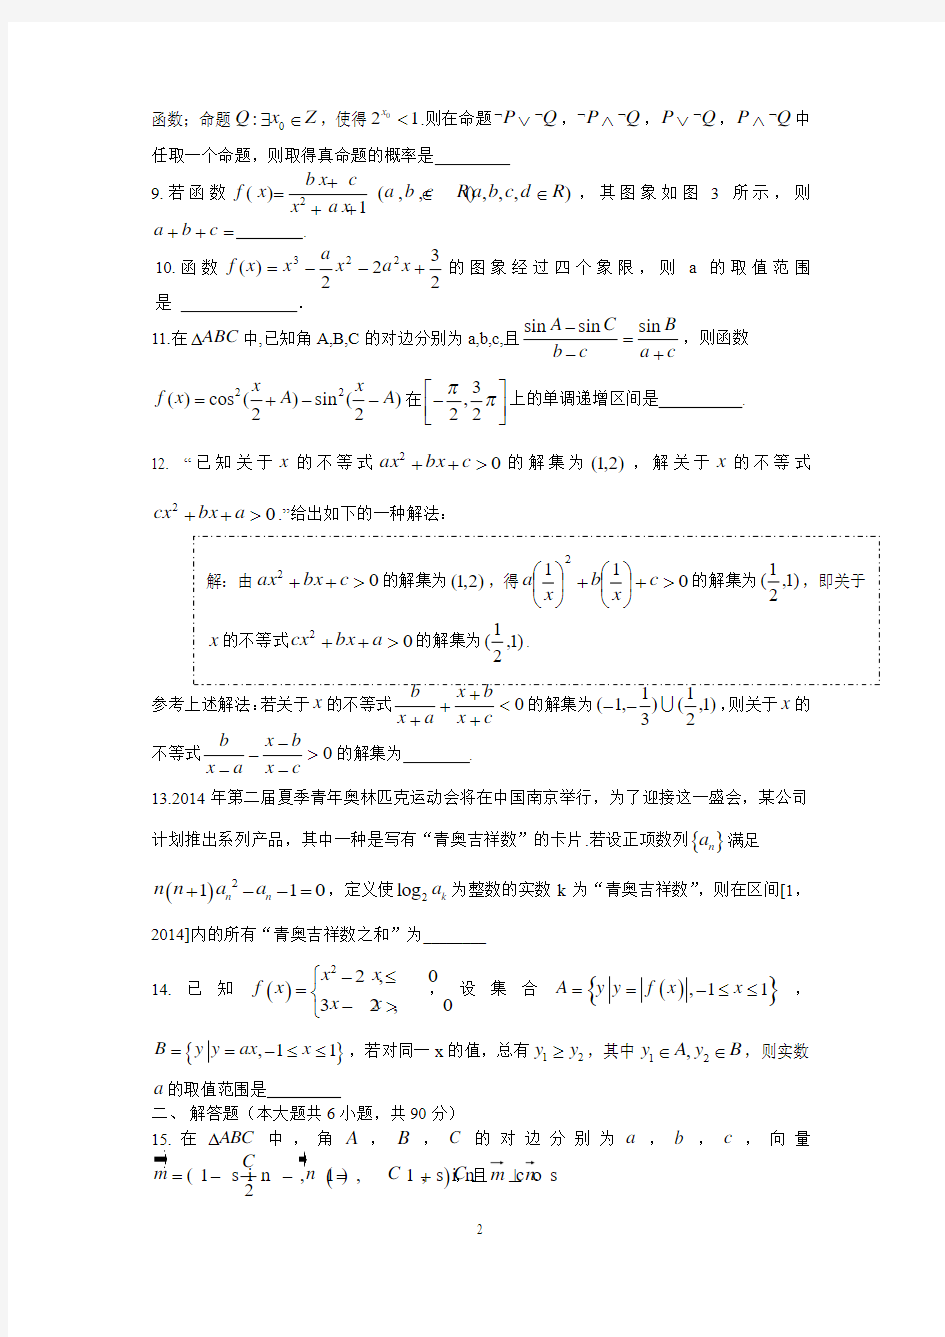 2015江苏高考压轴卷 数学word版 含答案